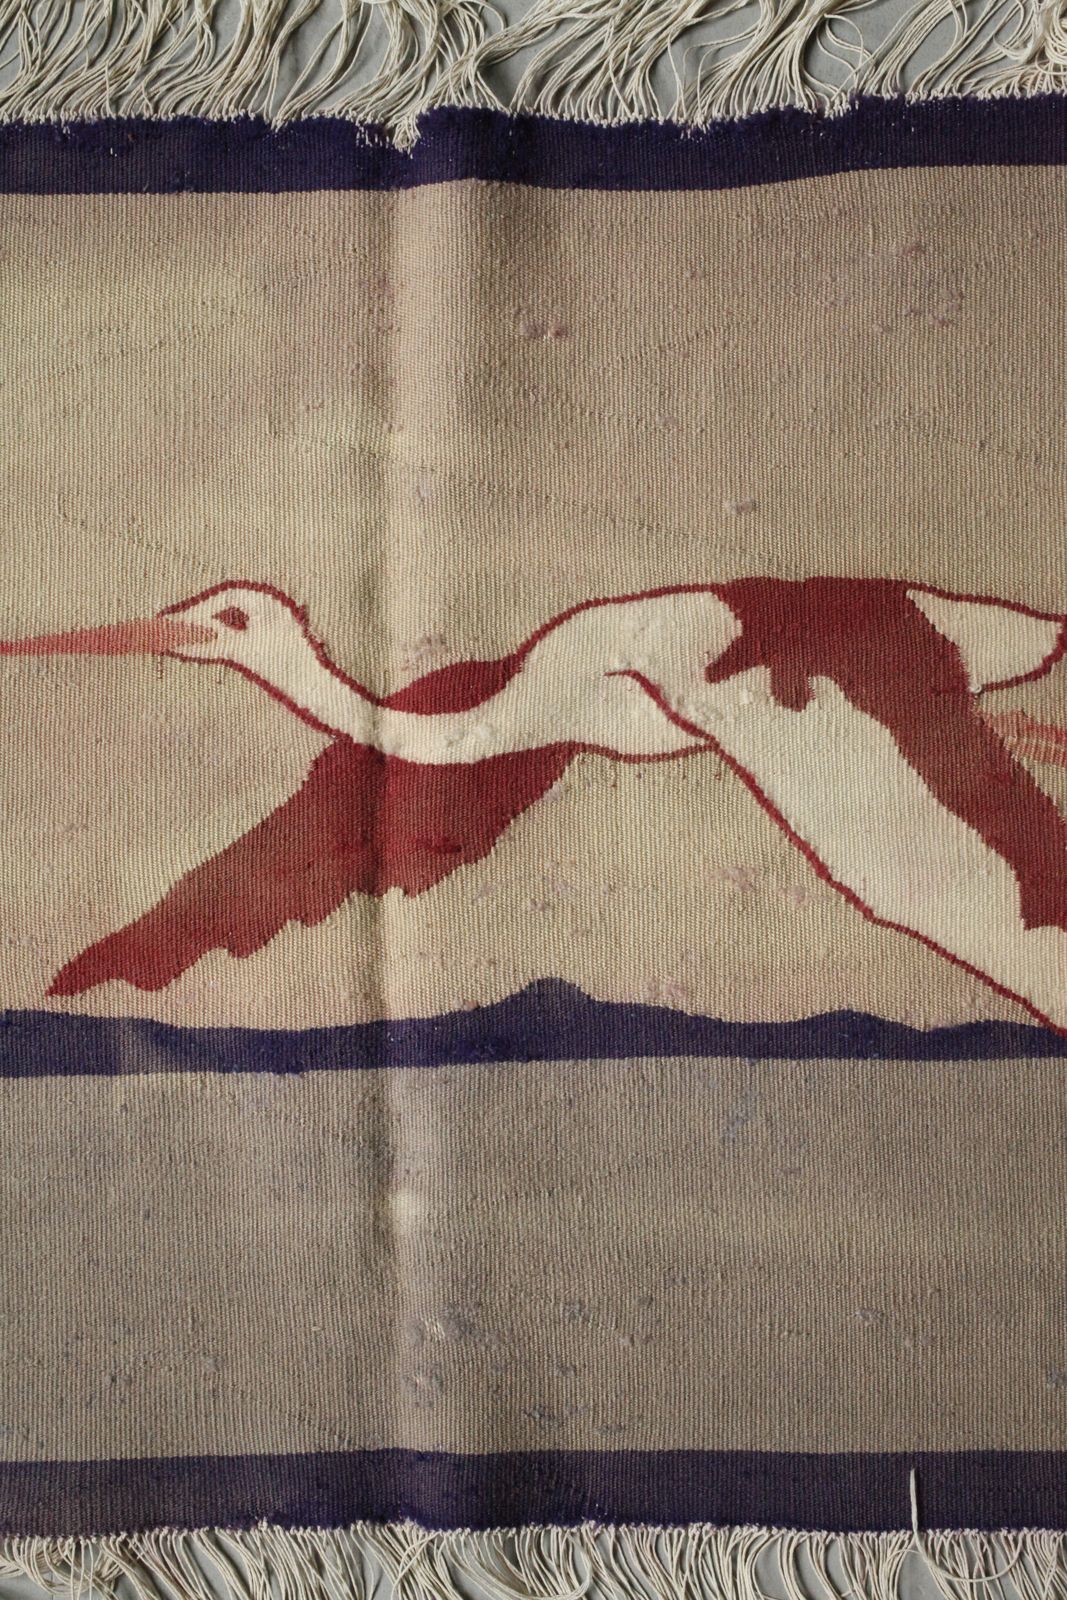 Art Weaving School Scherrebek Wall Hanging Three Storks - Image 11 of 12